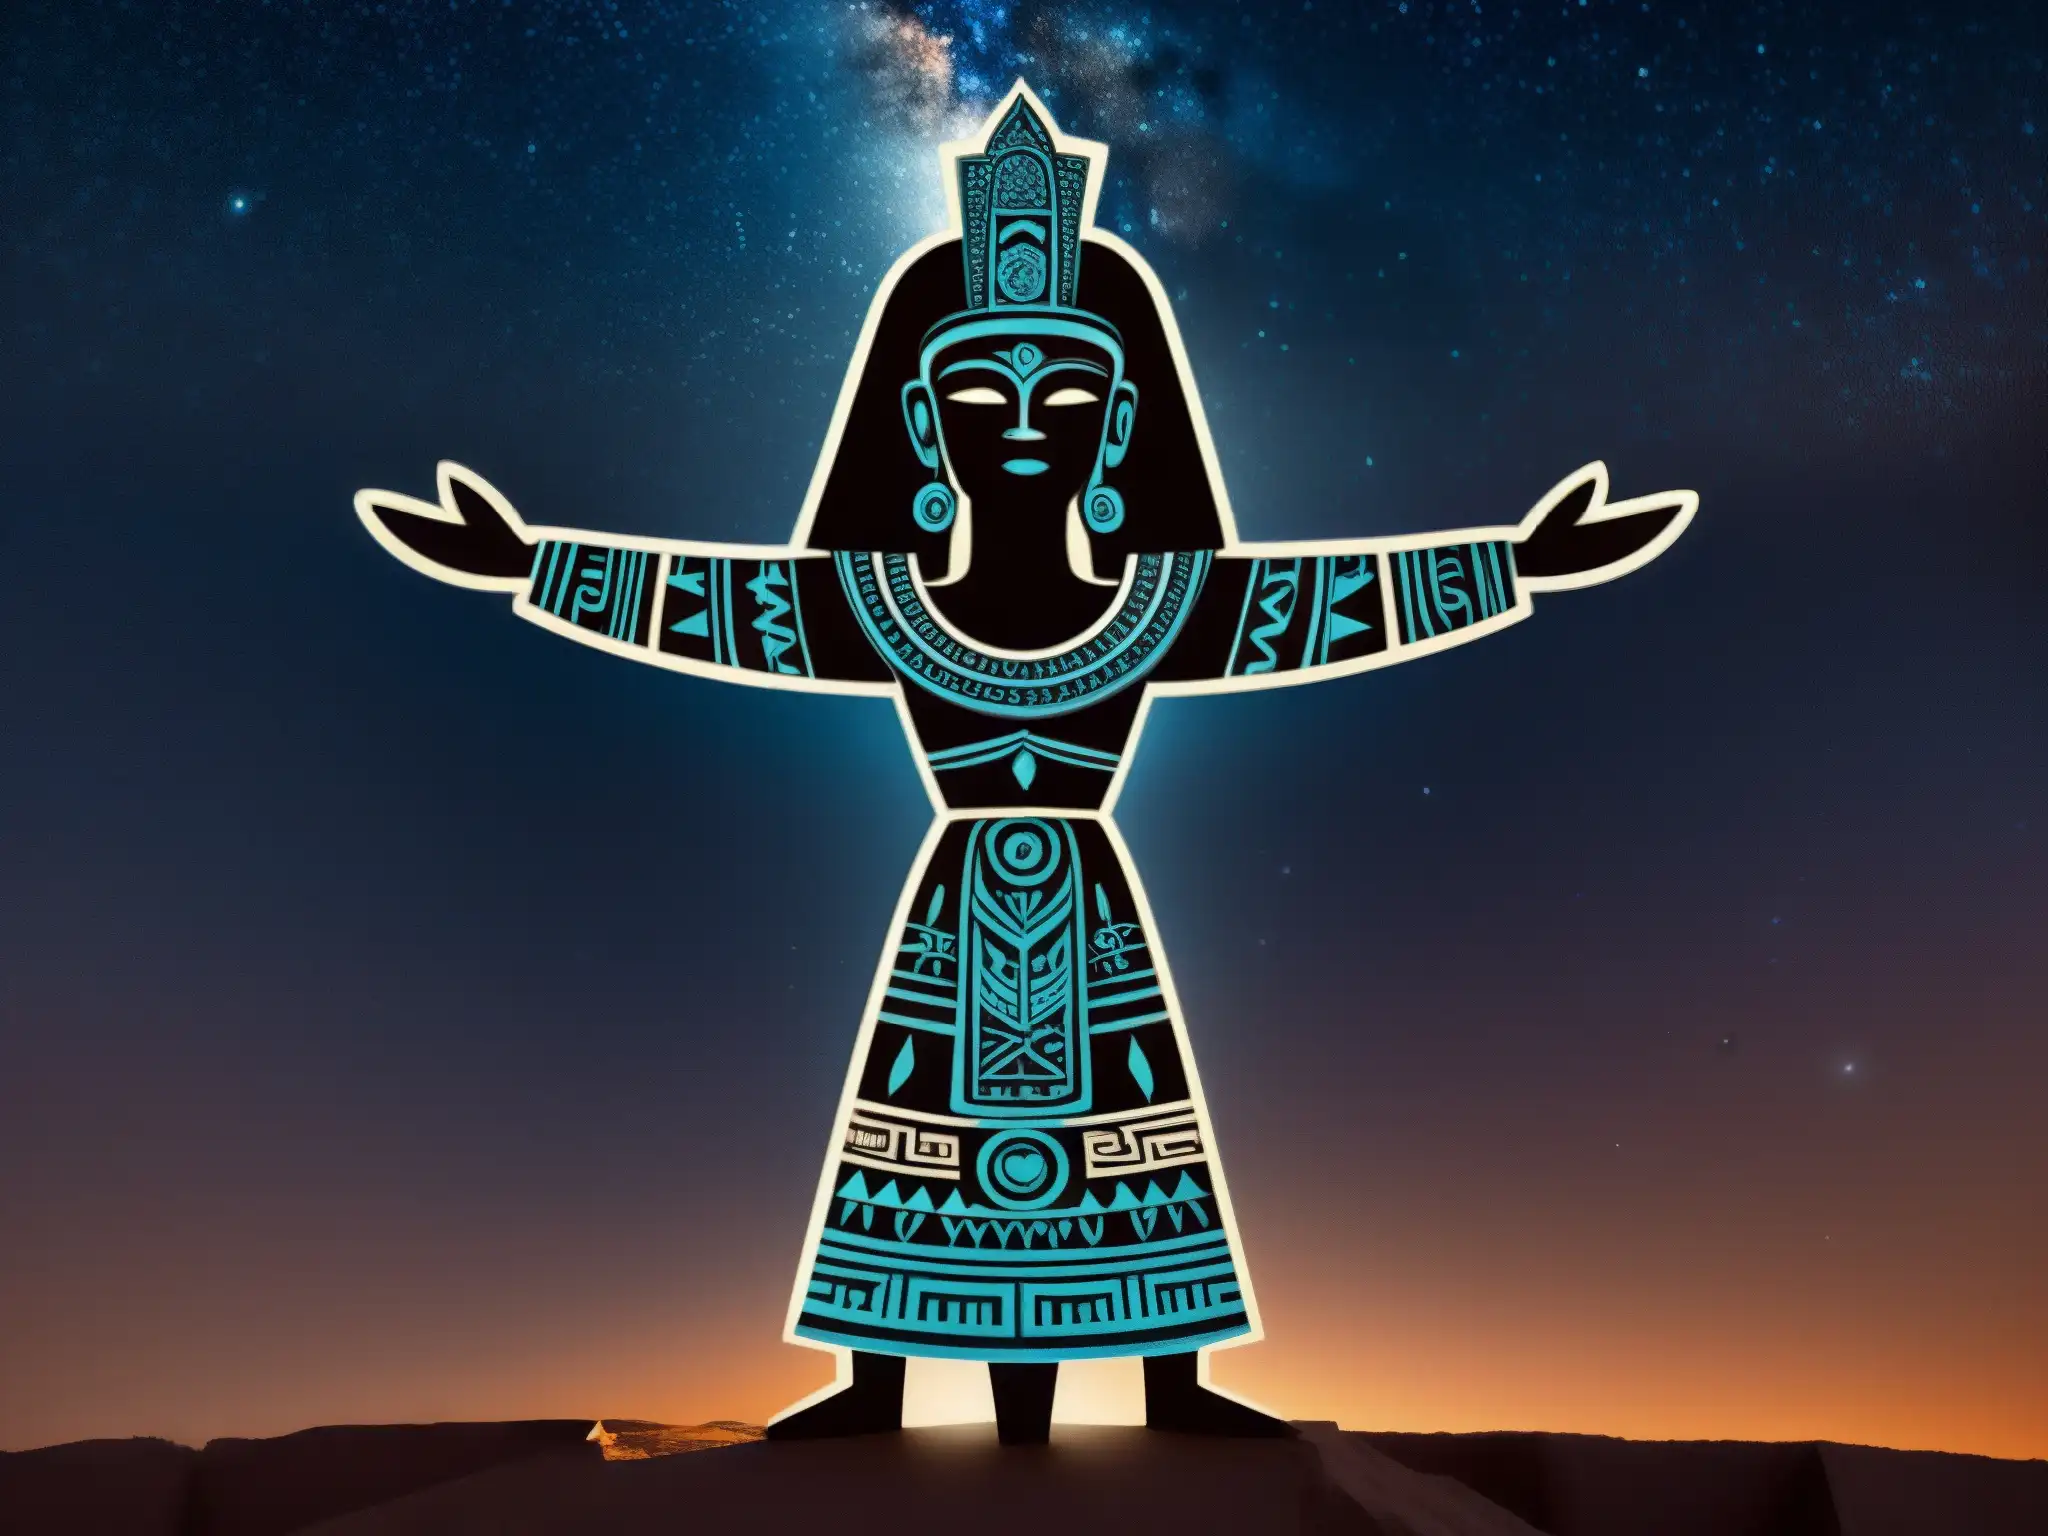 Detalle de ilustración del Tzitzimitl prehispánico en pose dramática, con diseño intrincado y fondo estrellado evocando la lucha contra la oscuridad